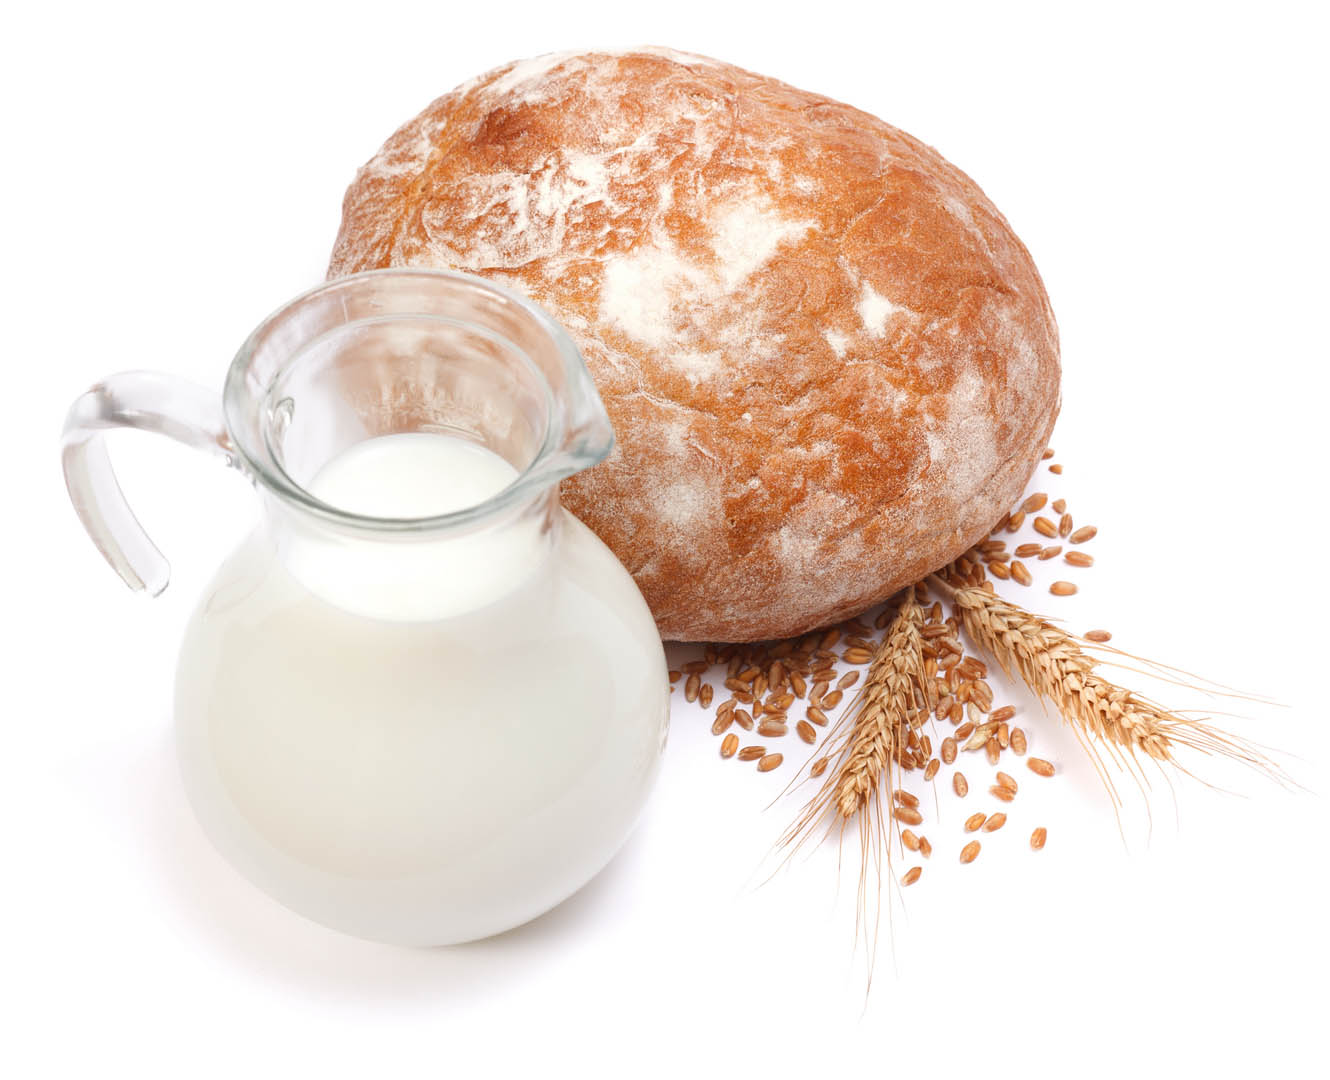 Restrição de glúten e lactose na dieta